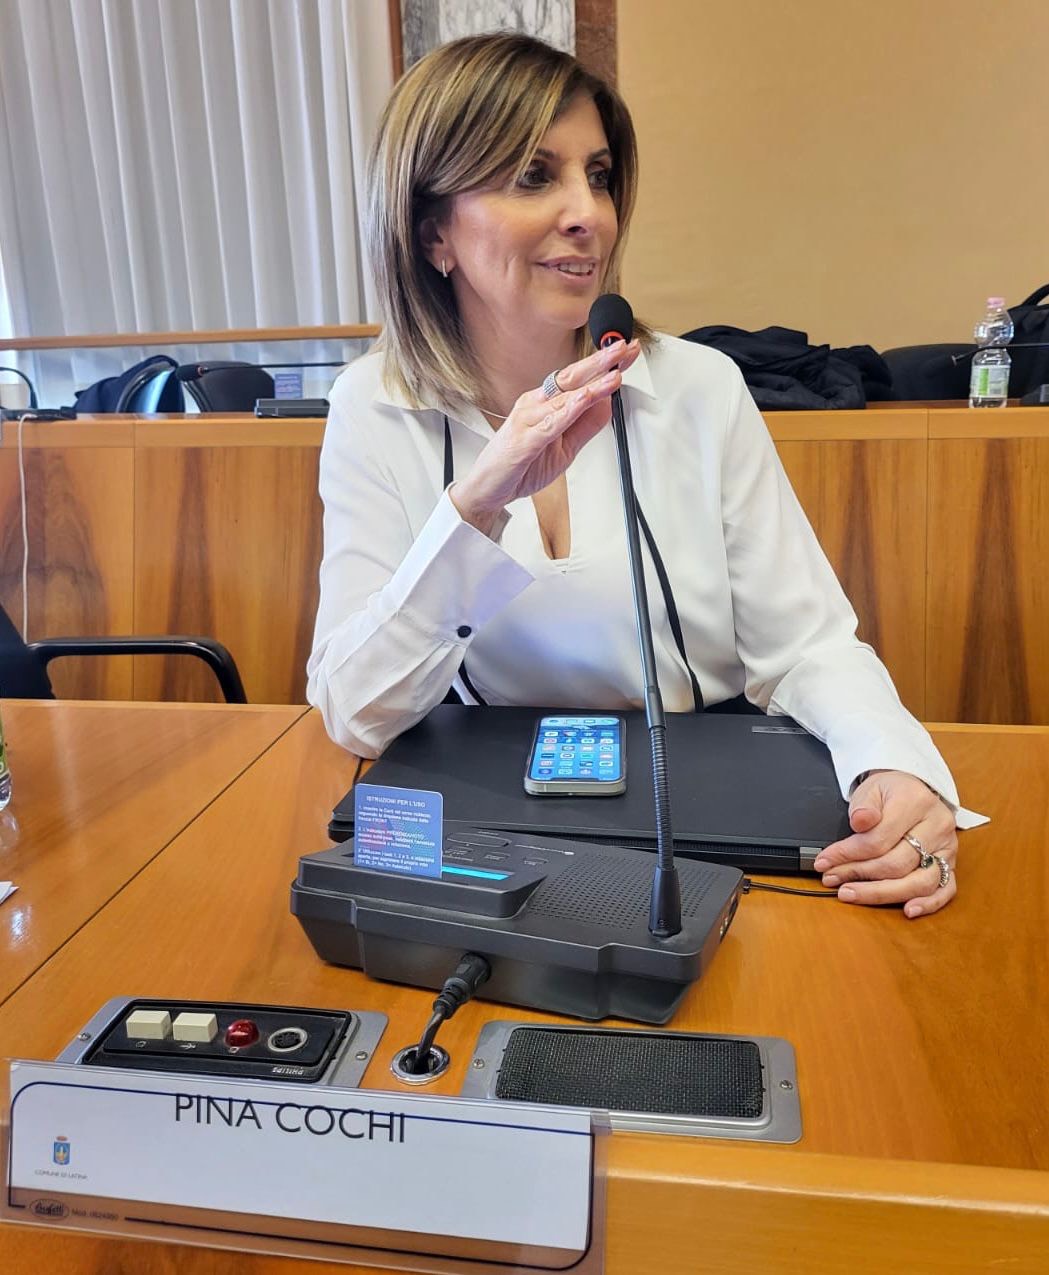 Pina Cochi, consigliera comunale di Latina in quota Lega